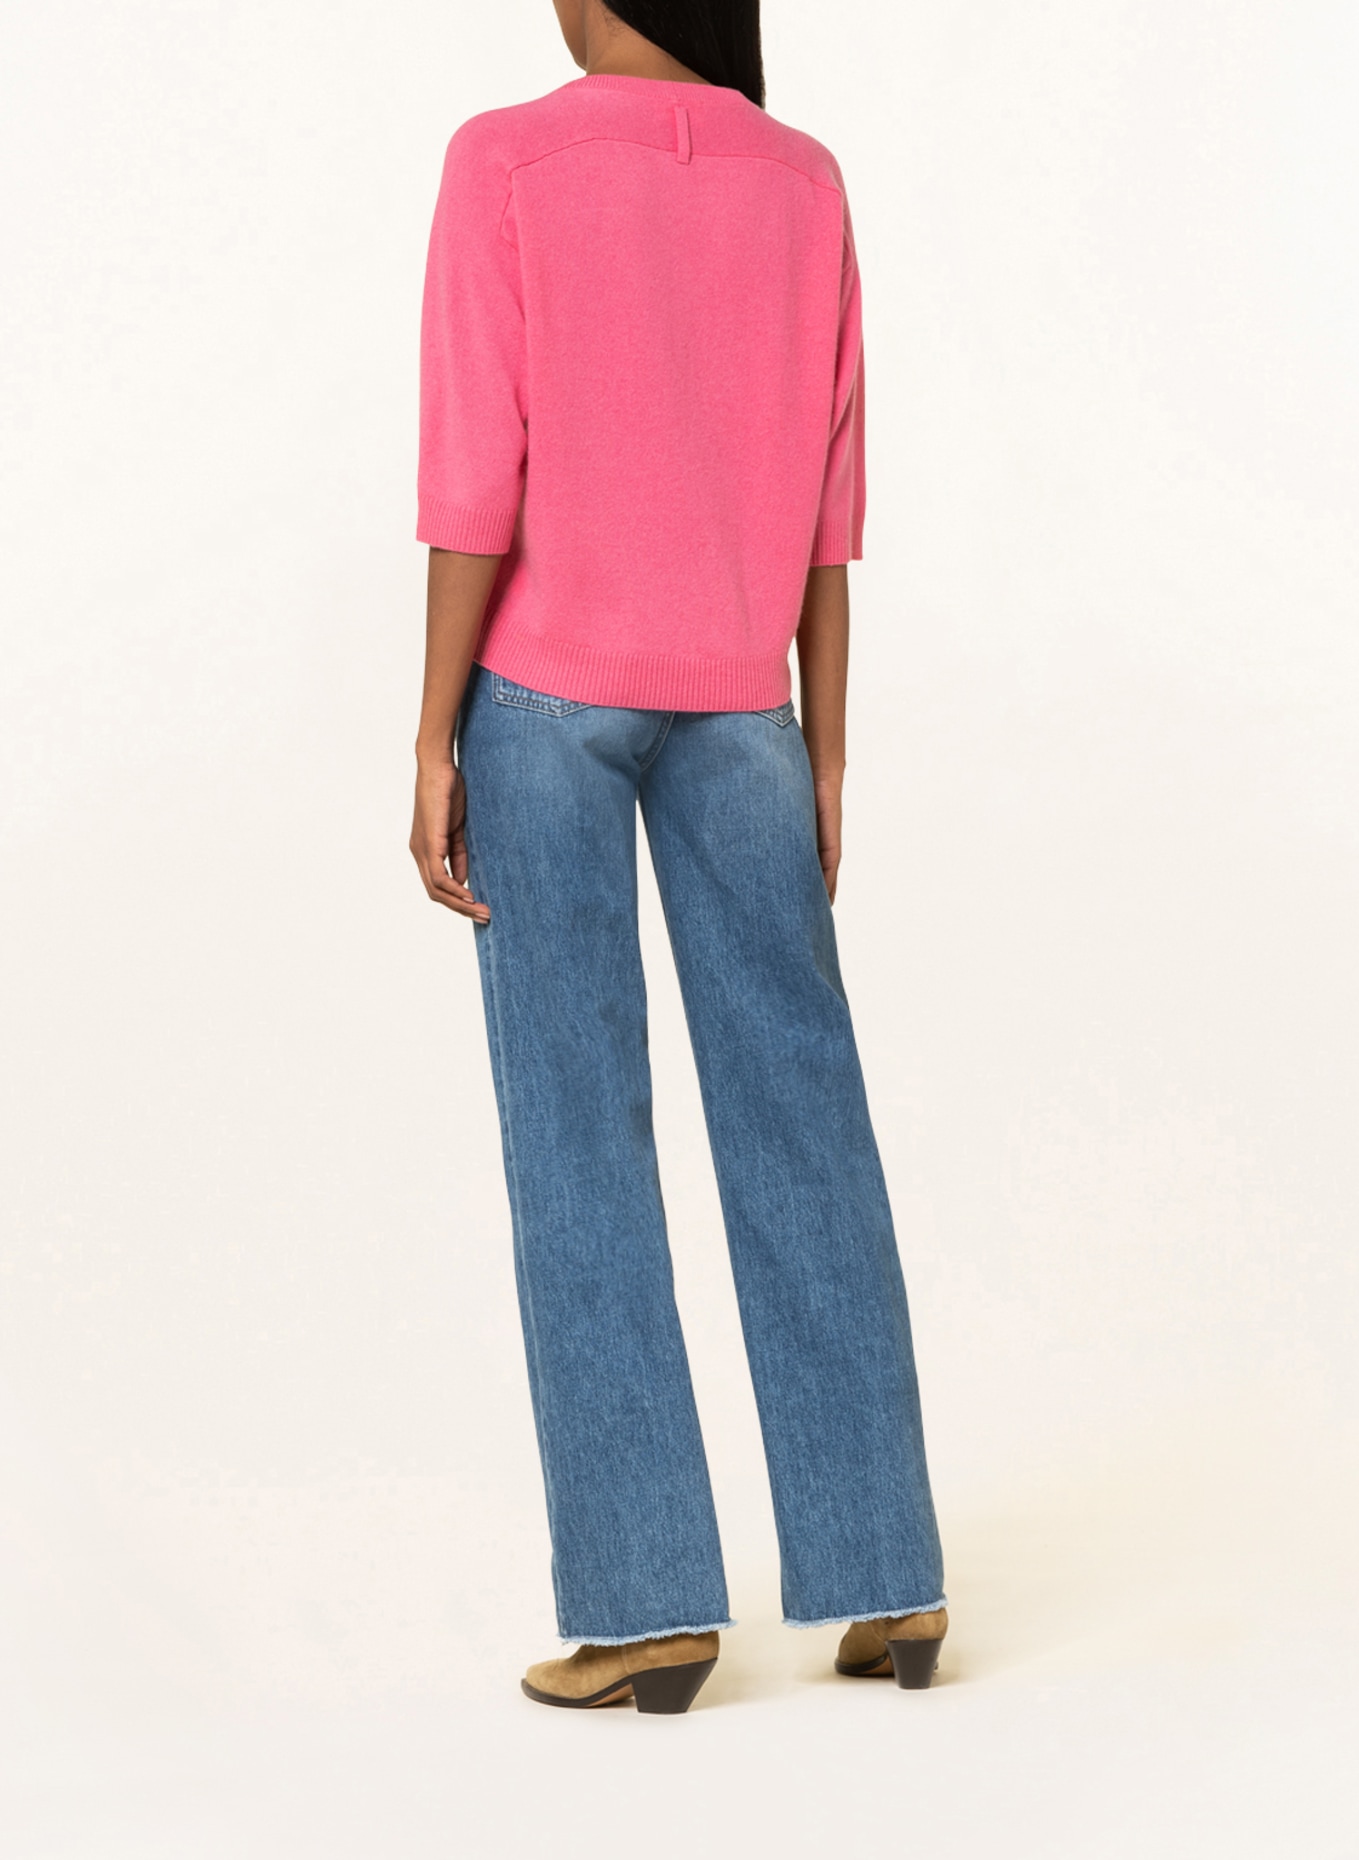 HEMISPHERE Cashmere-Pullover mit 3/4-Arm, Farbe: PINK (Bild 3)